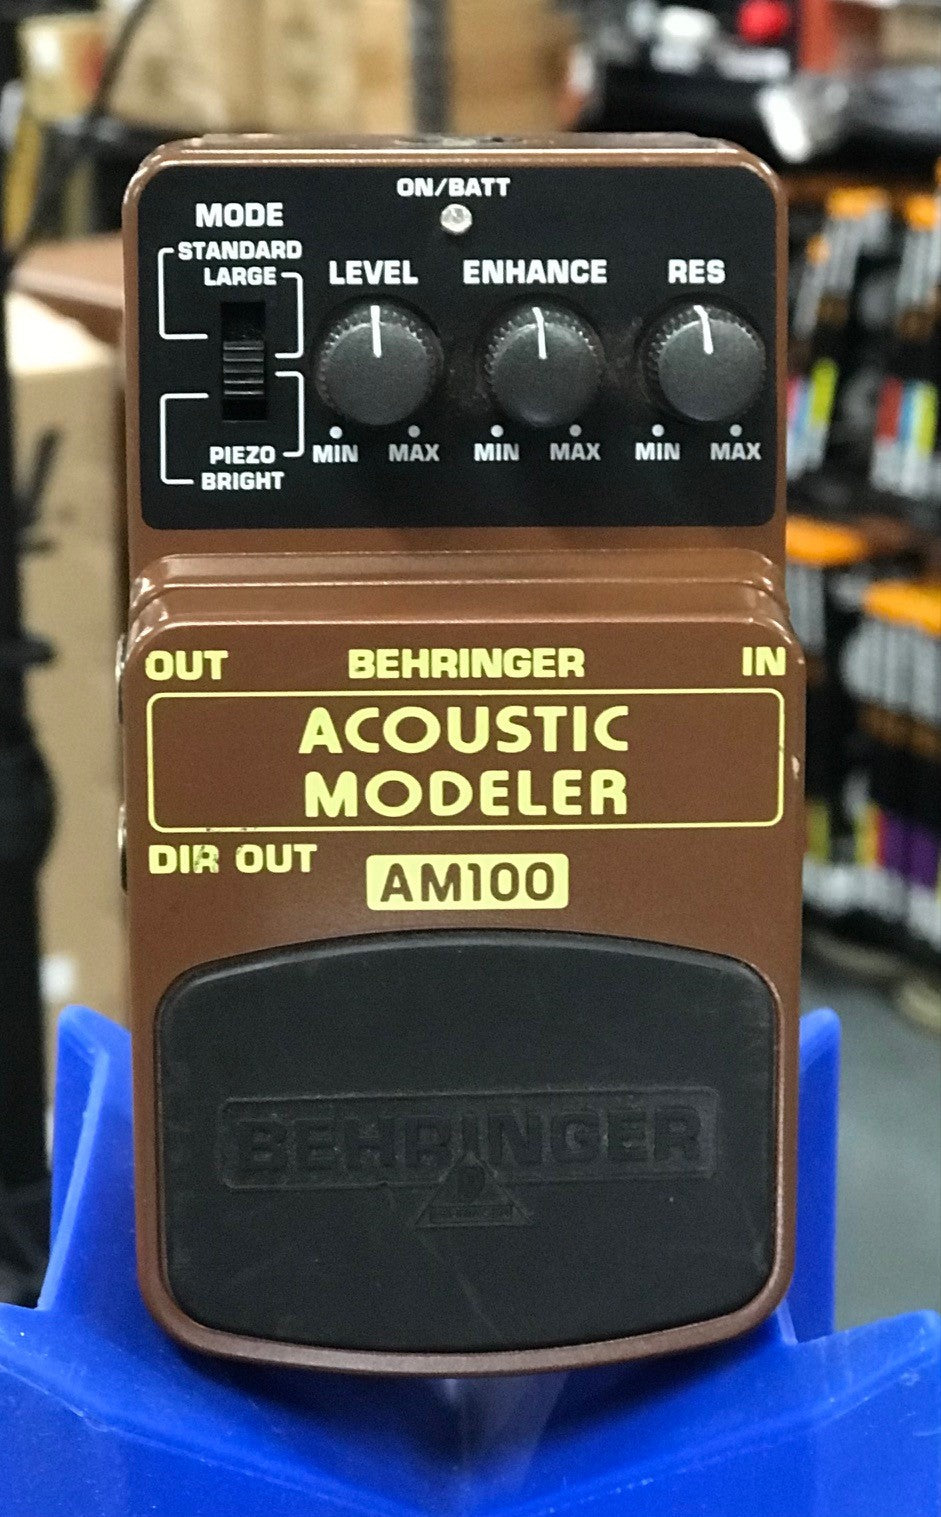 Behringer Acoustic Modeler AM100 (Pre-loved)